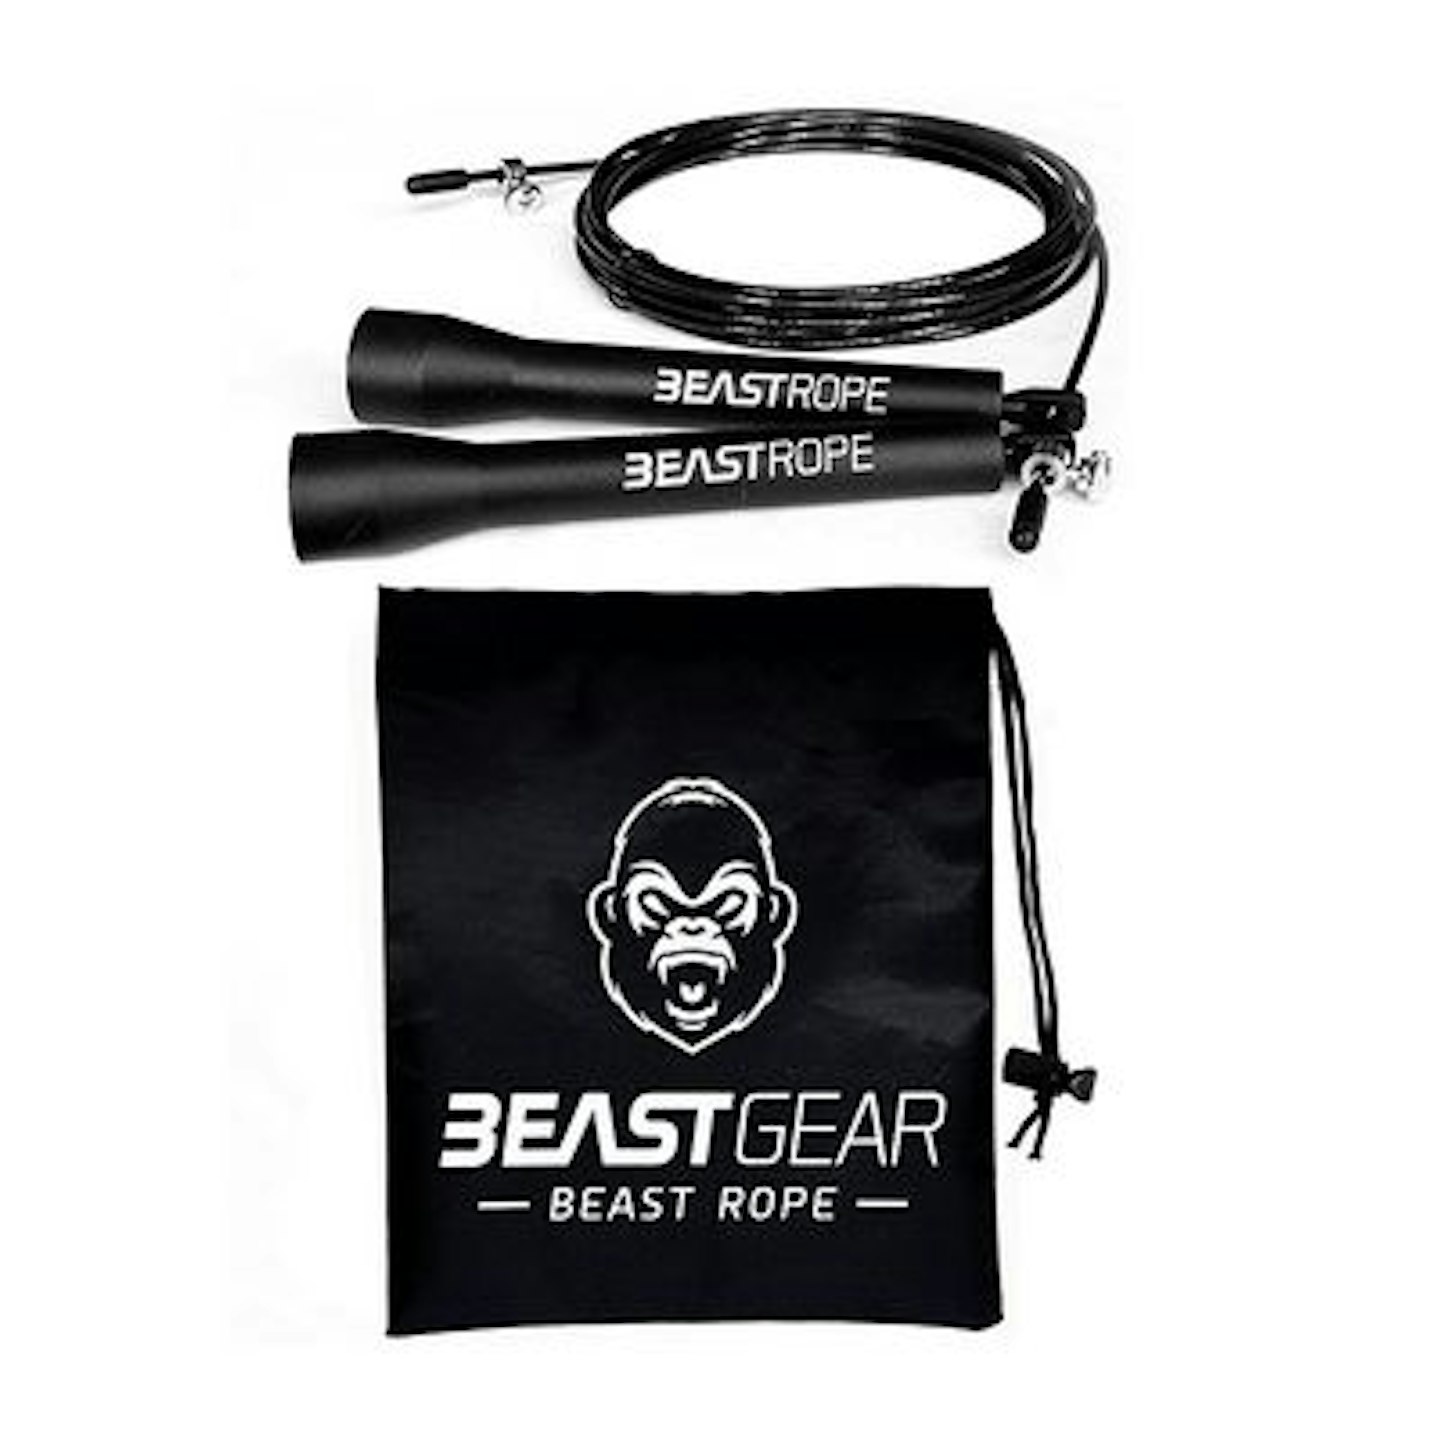 Beast Rope by Beast Gear